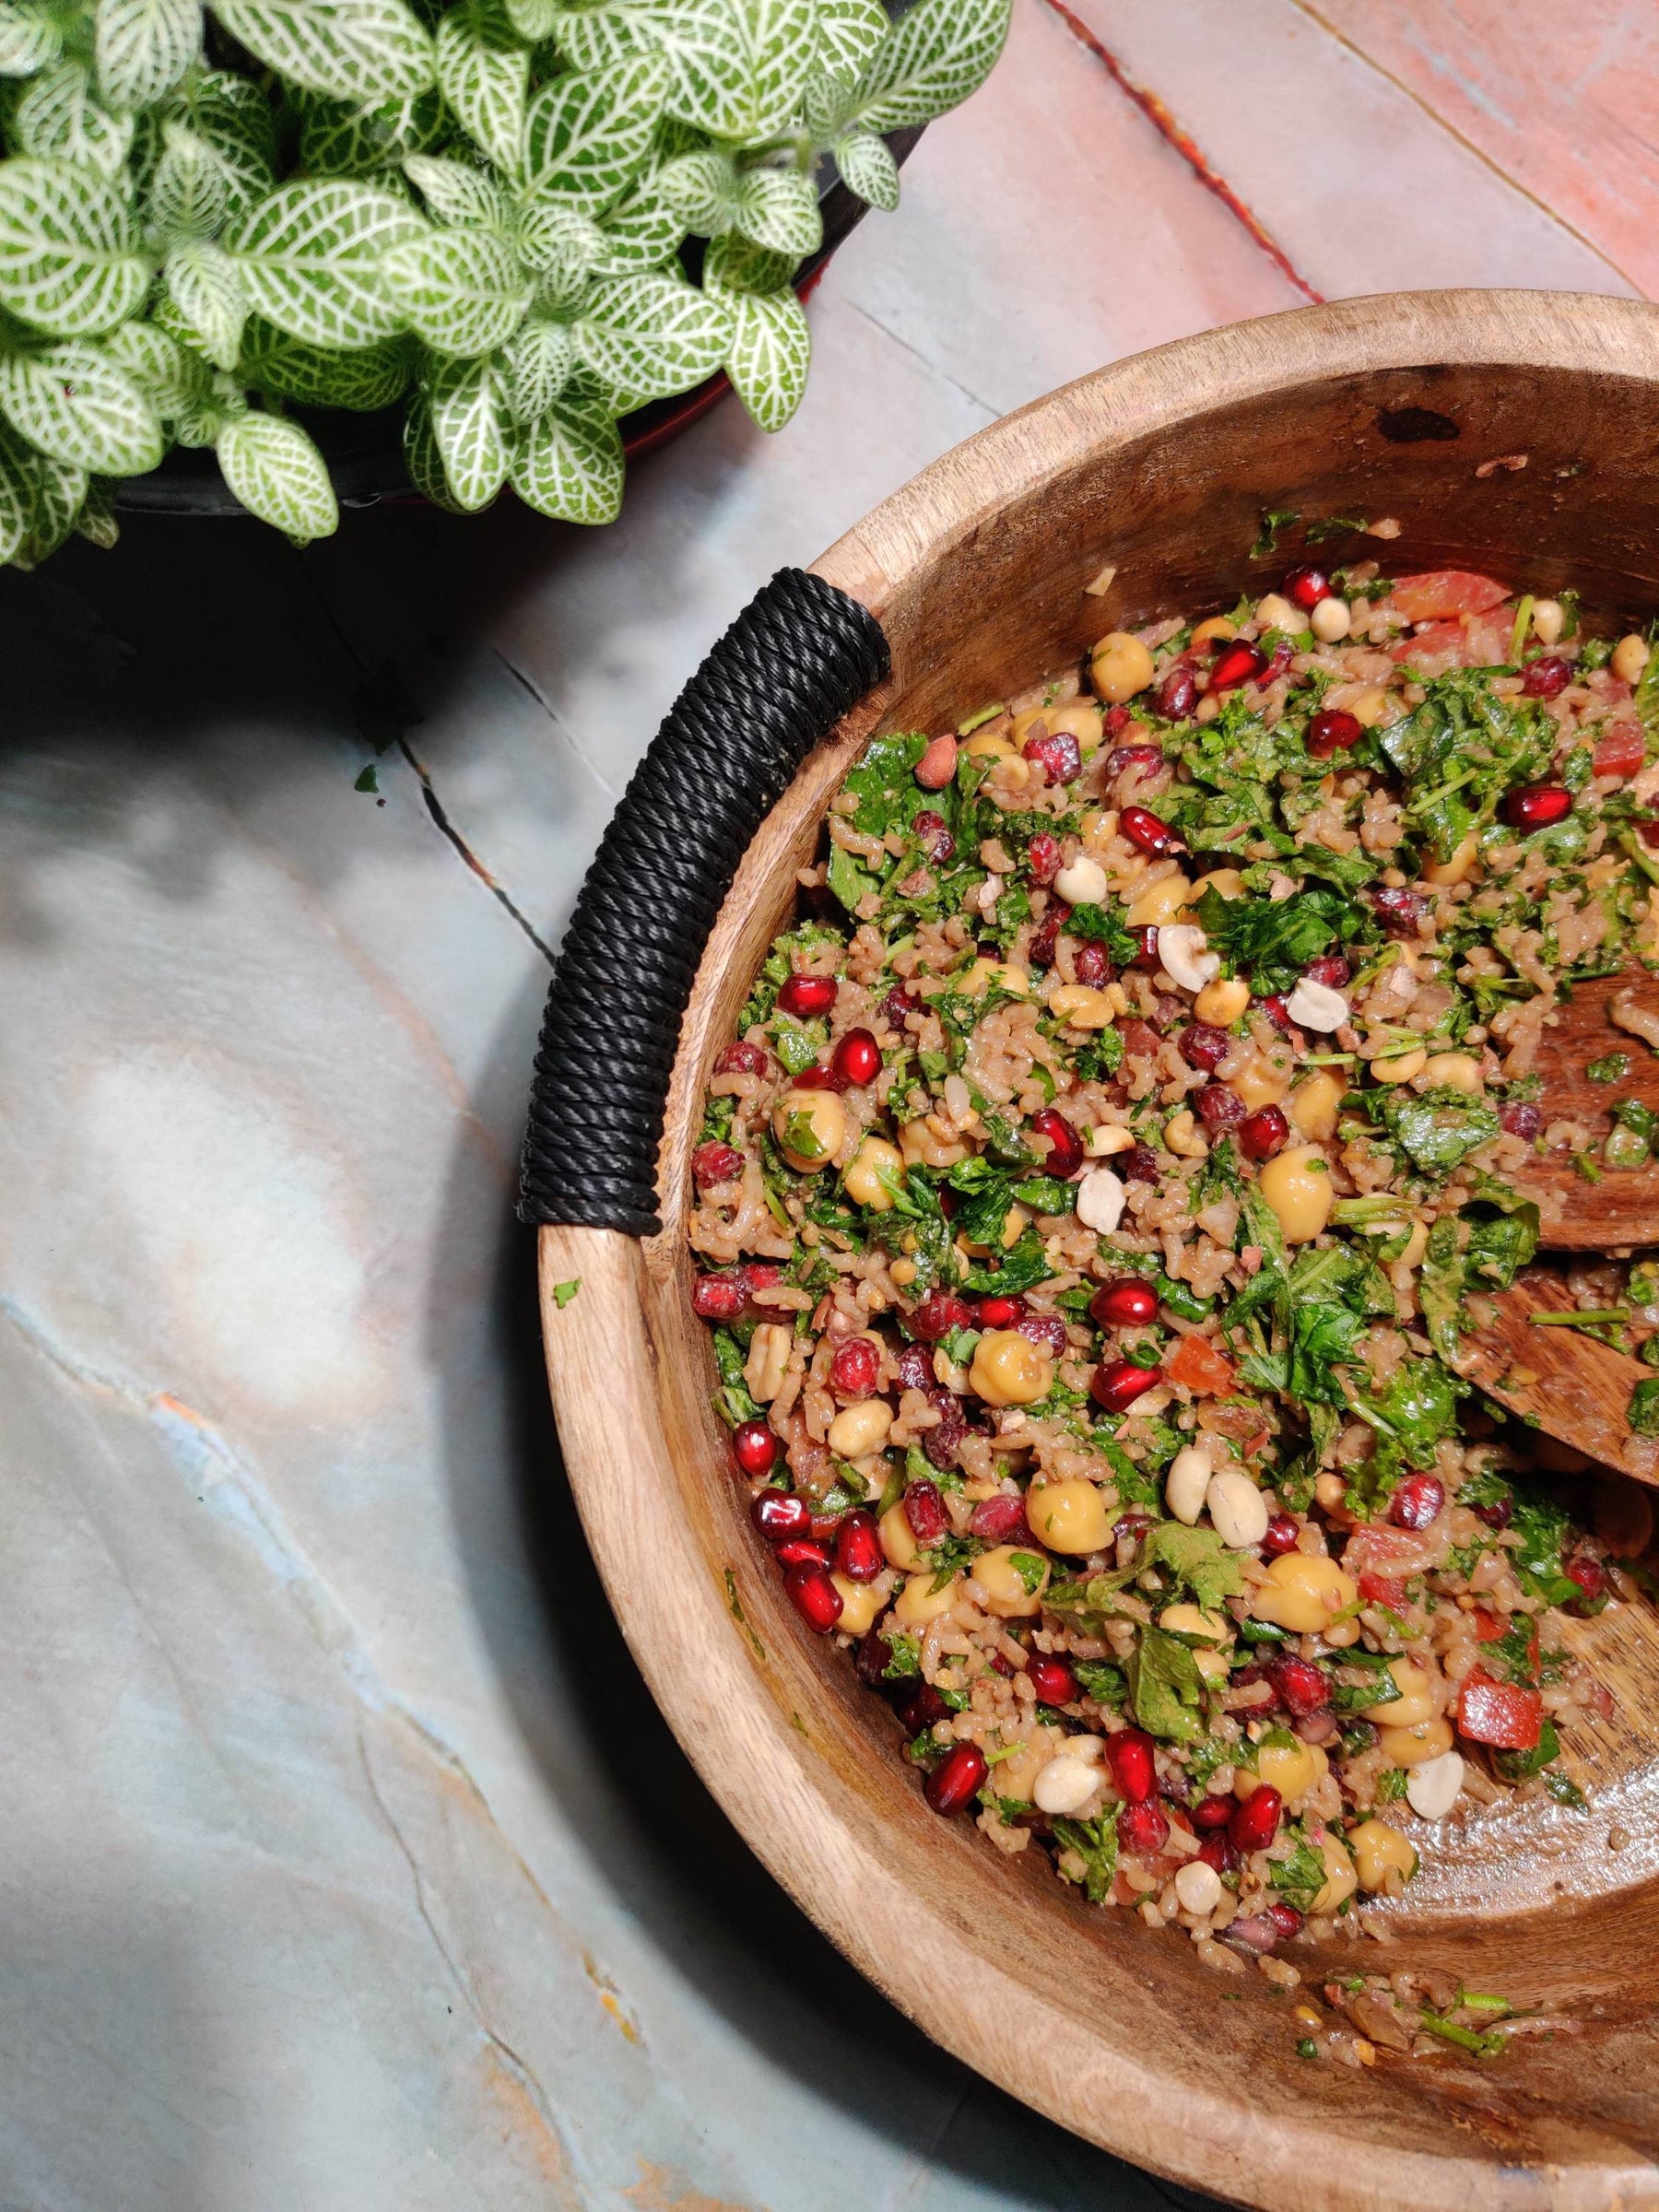 Kale & Peanut Sauce Trinity Salad - Roshni Sanghvi